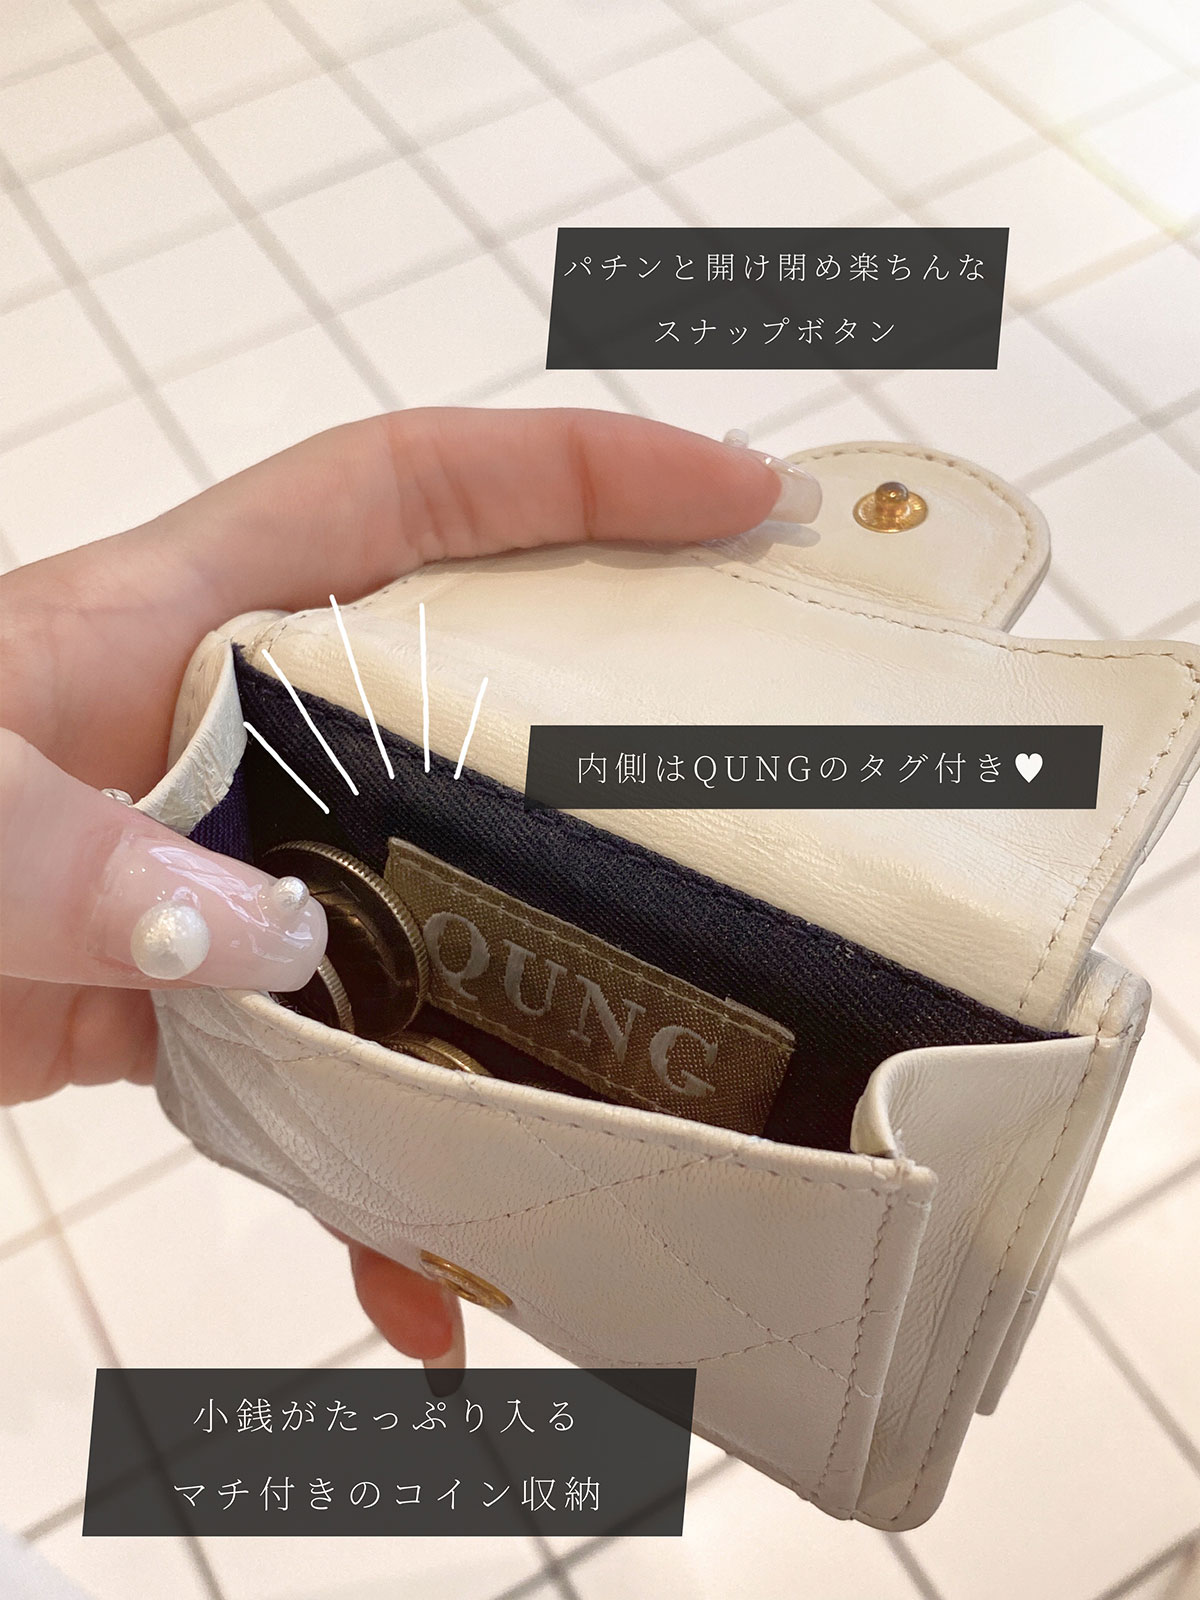 クン quilting mini Wallet カラー:ブラック、アイボリー、ハヌル、ミントグリーン